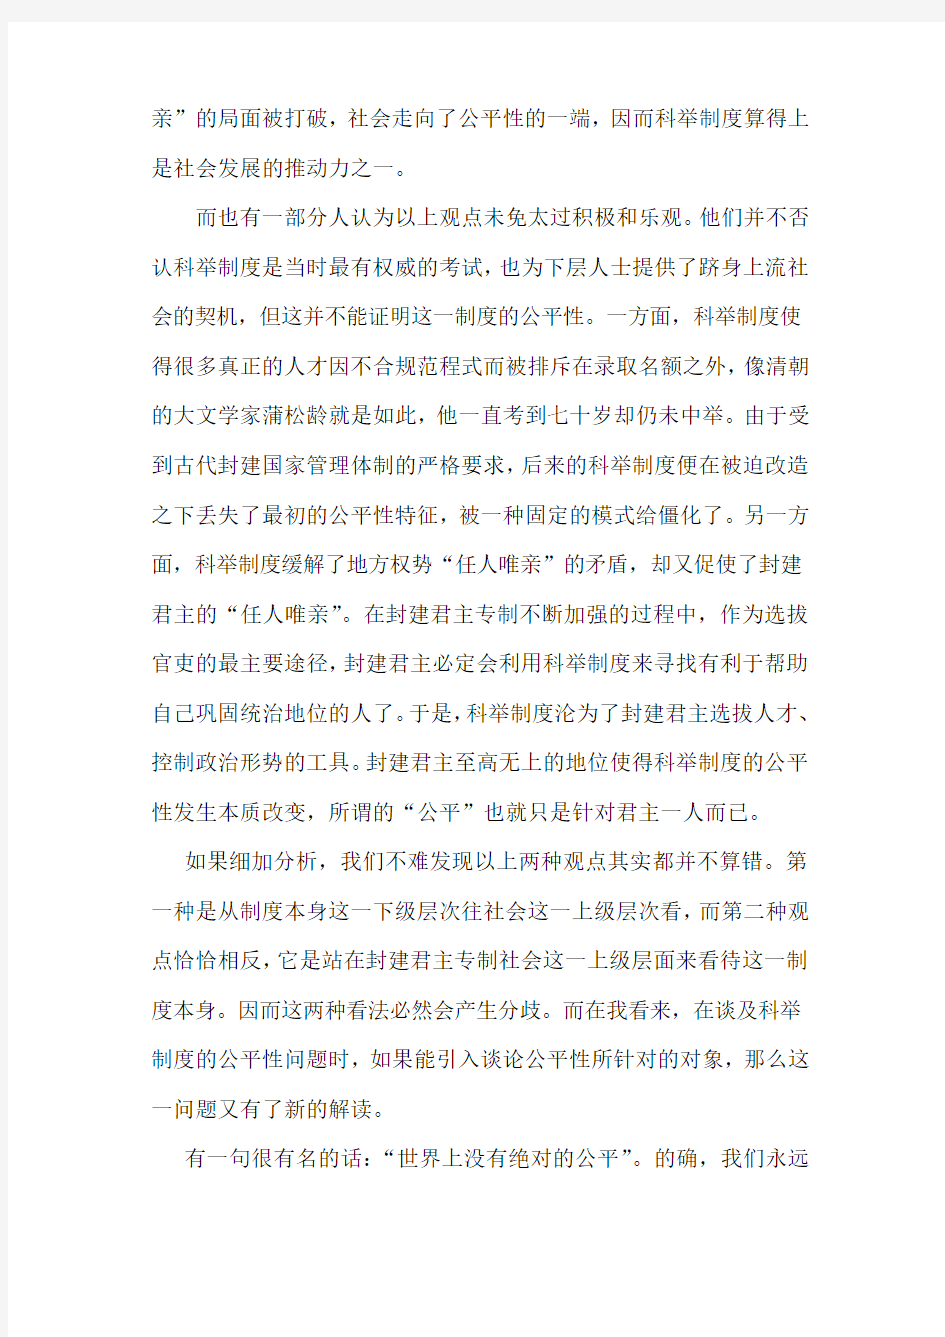 中国文化通论期末考试论文 试论科举制度的公平性